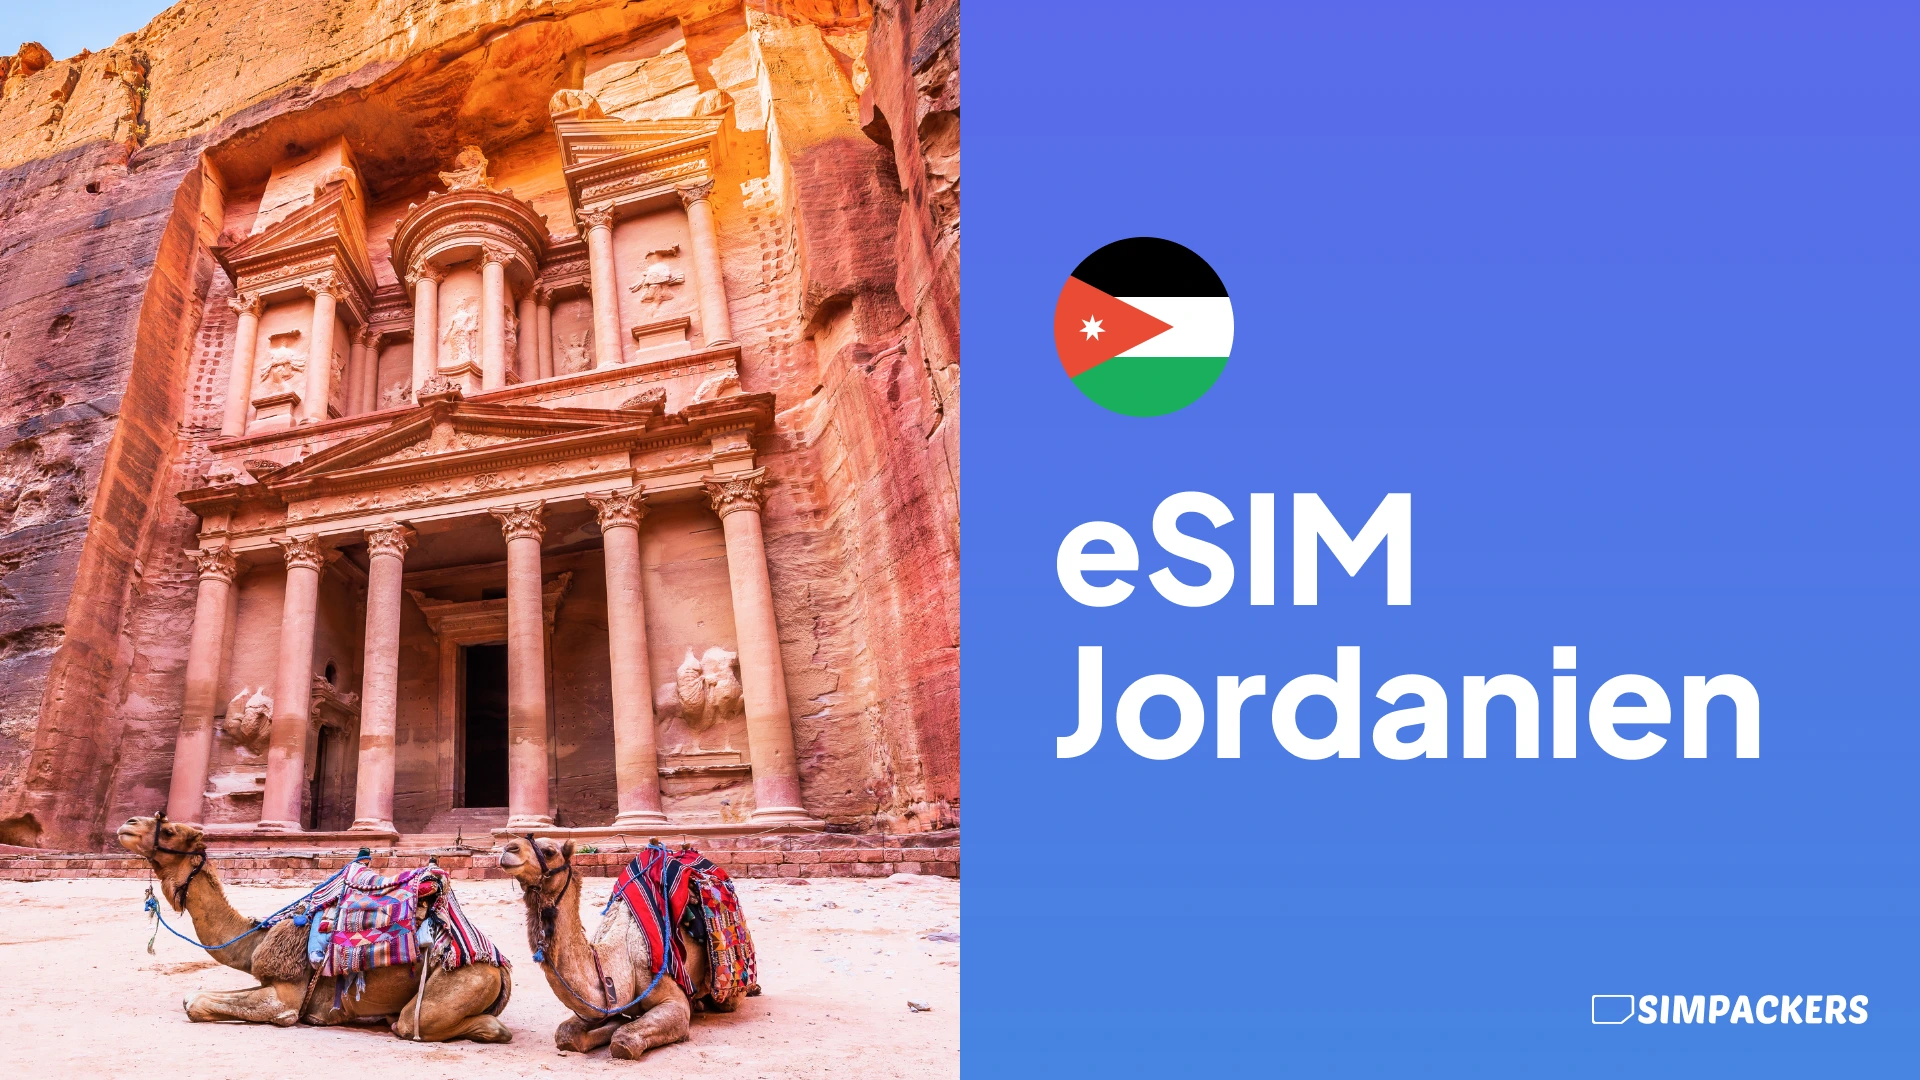 DE/FEATURED_IMAGES/esim-jordanien.webp